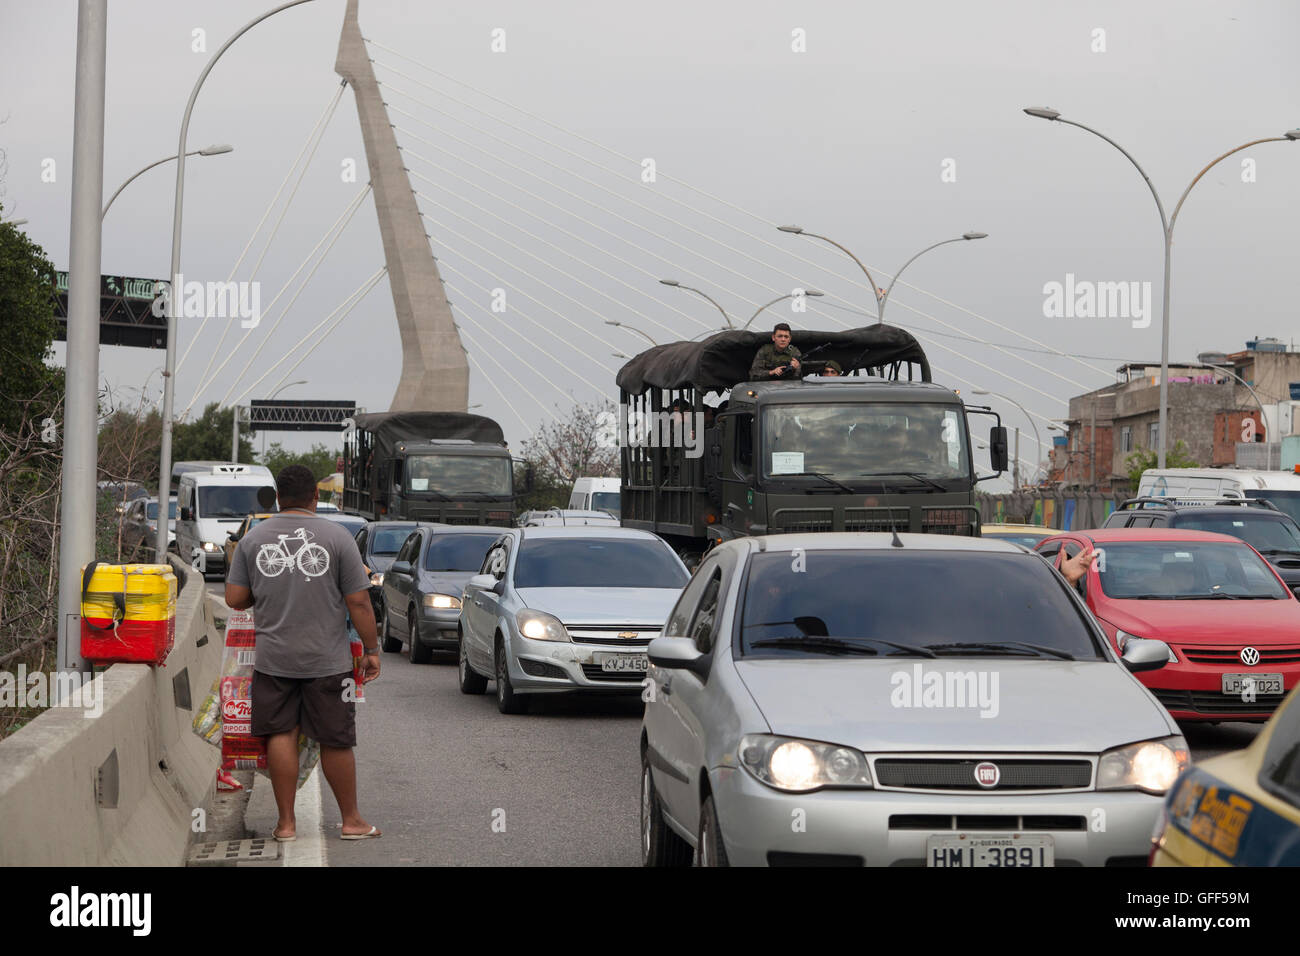 Esercito brasiliano carrello passa da Complexo da mare, un enorme rete di favelas che affiancano la Linha Vermelha ( Linea Rossa ), la principale autostrada per l'aeroporto internazionale di Rio de Janeiro al centro della citta'. Foto Stock